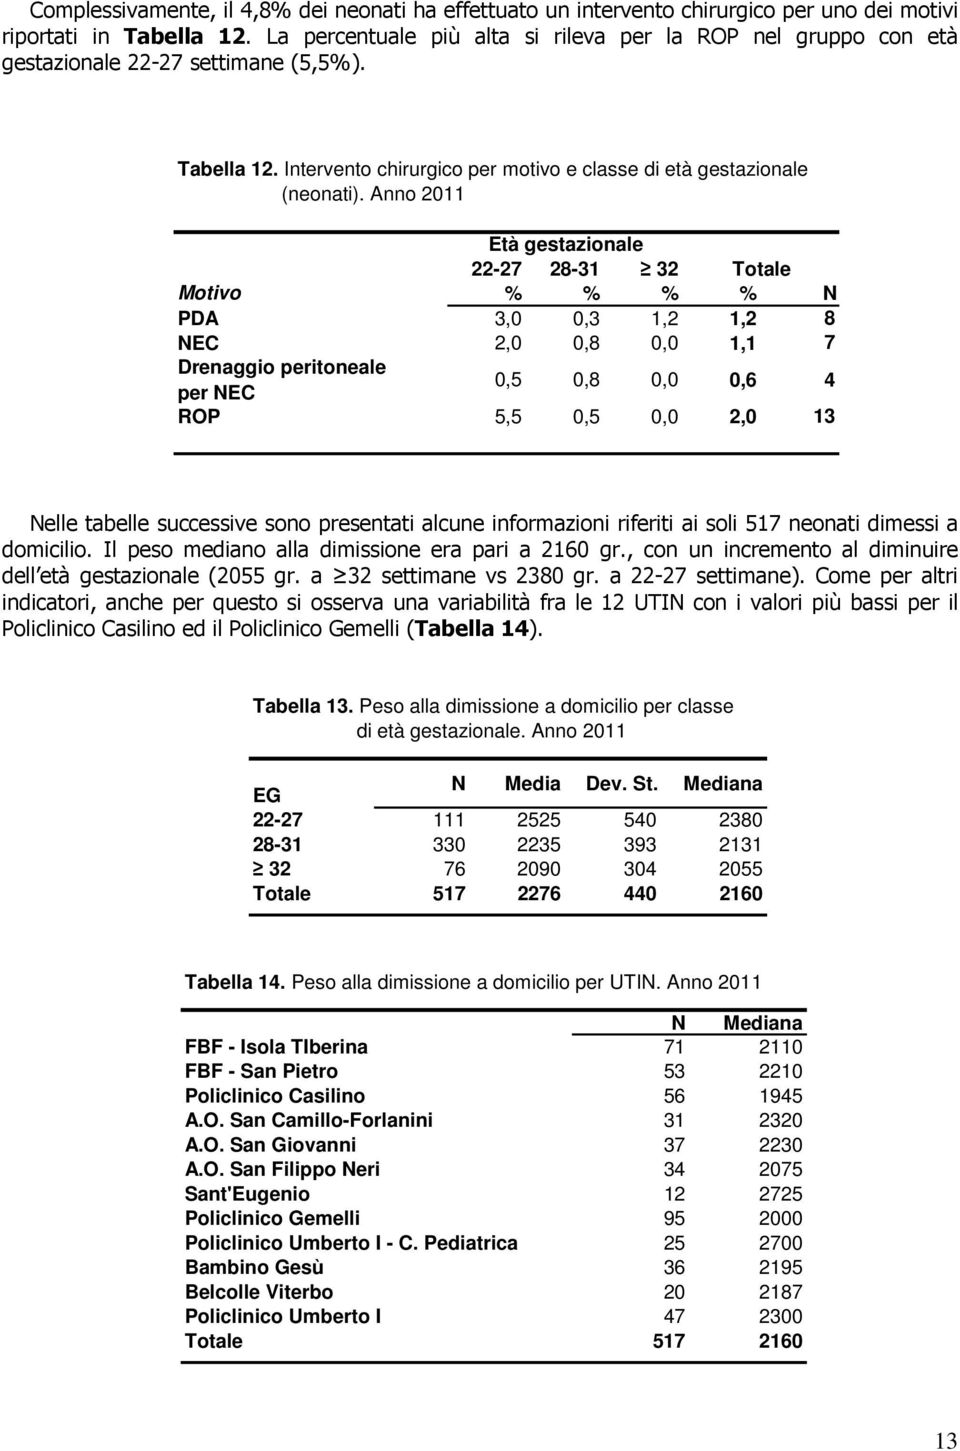 Anno 2011 22-27 28-31 32 Totale Motivo % % % % N PDA 3,0 0,3 1,2 1,2 8 NEC 2,0 0,8 0,0 1,1 7 Drenaggio peritoneale per NEC 0,5 0,8 0,0 0,6 4 ROP 5,5 0,5 0,0 2,0 13 Nelle tabelle successive sono